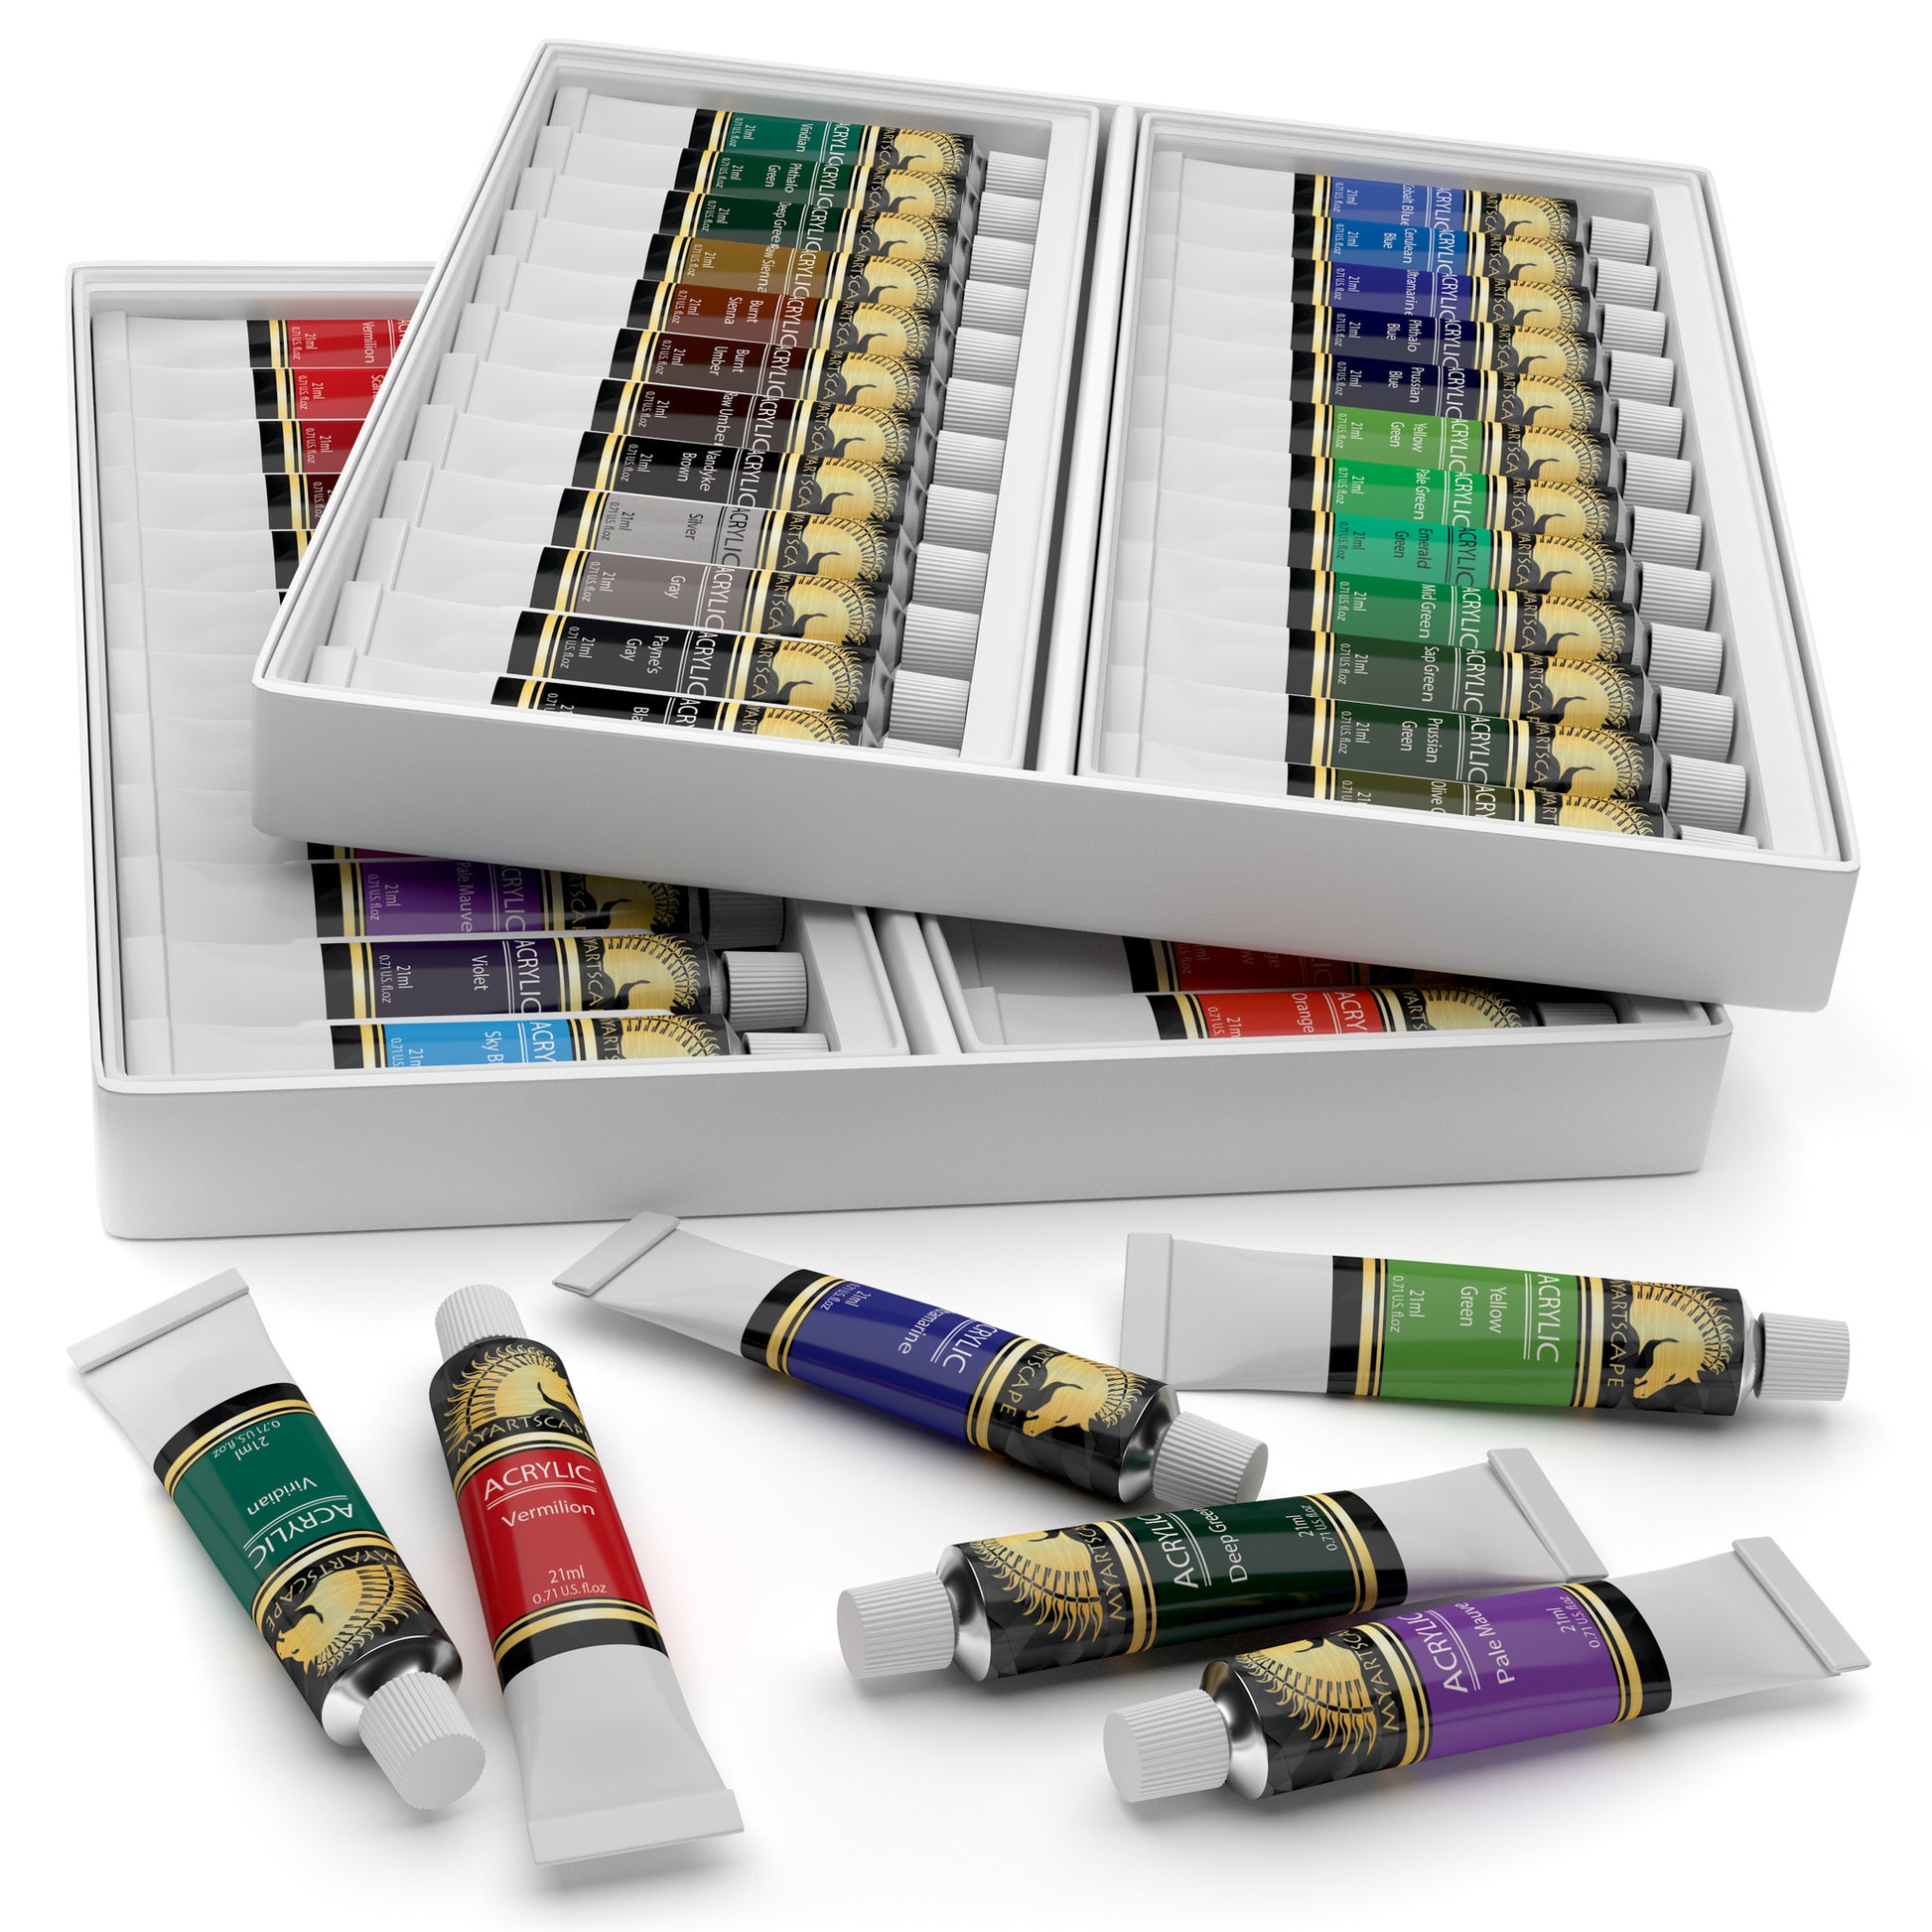 Acrylic Paint Large Tubes Set Painter Colour Color Pictures Kit 18